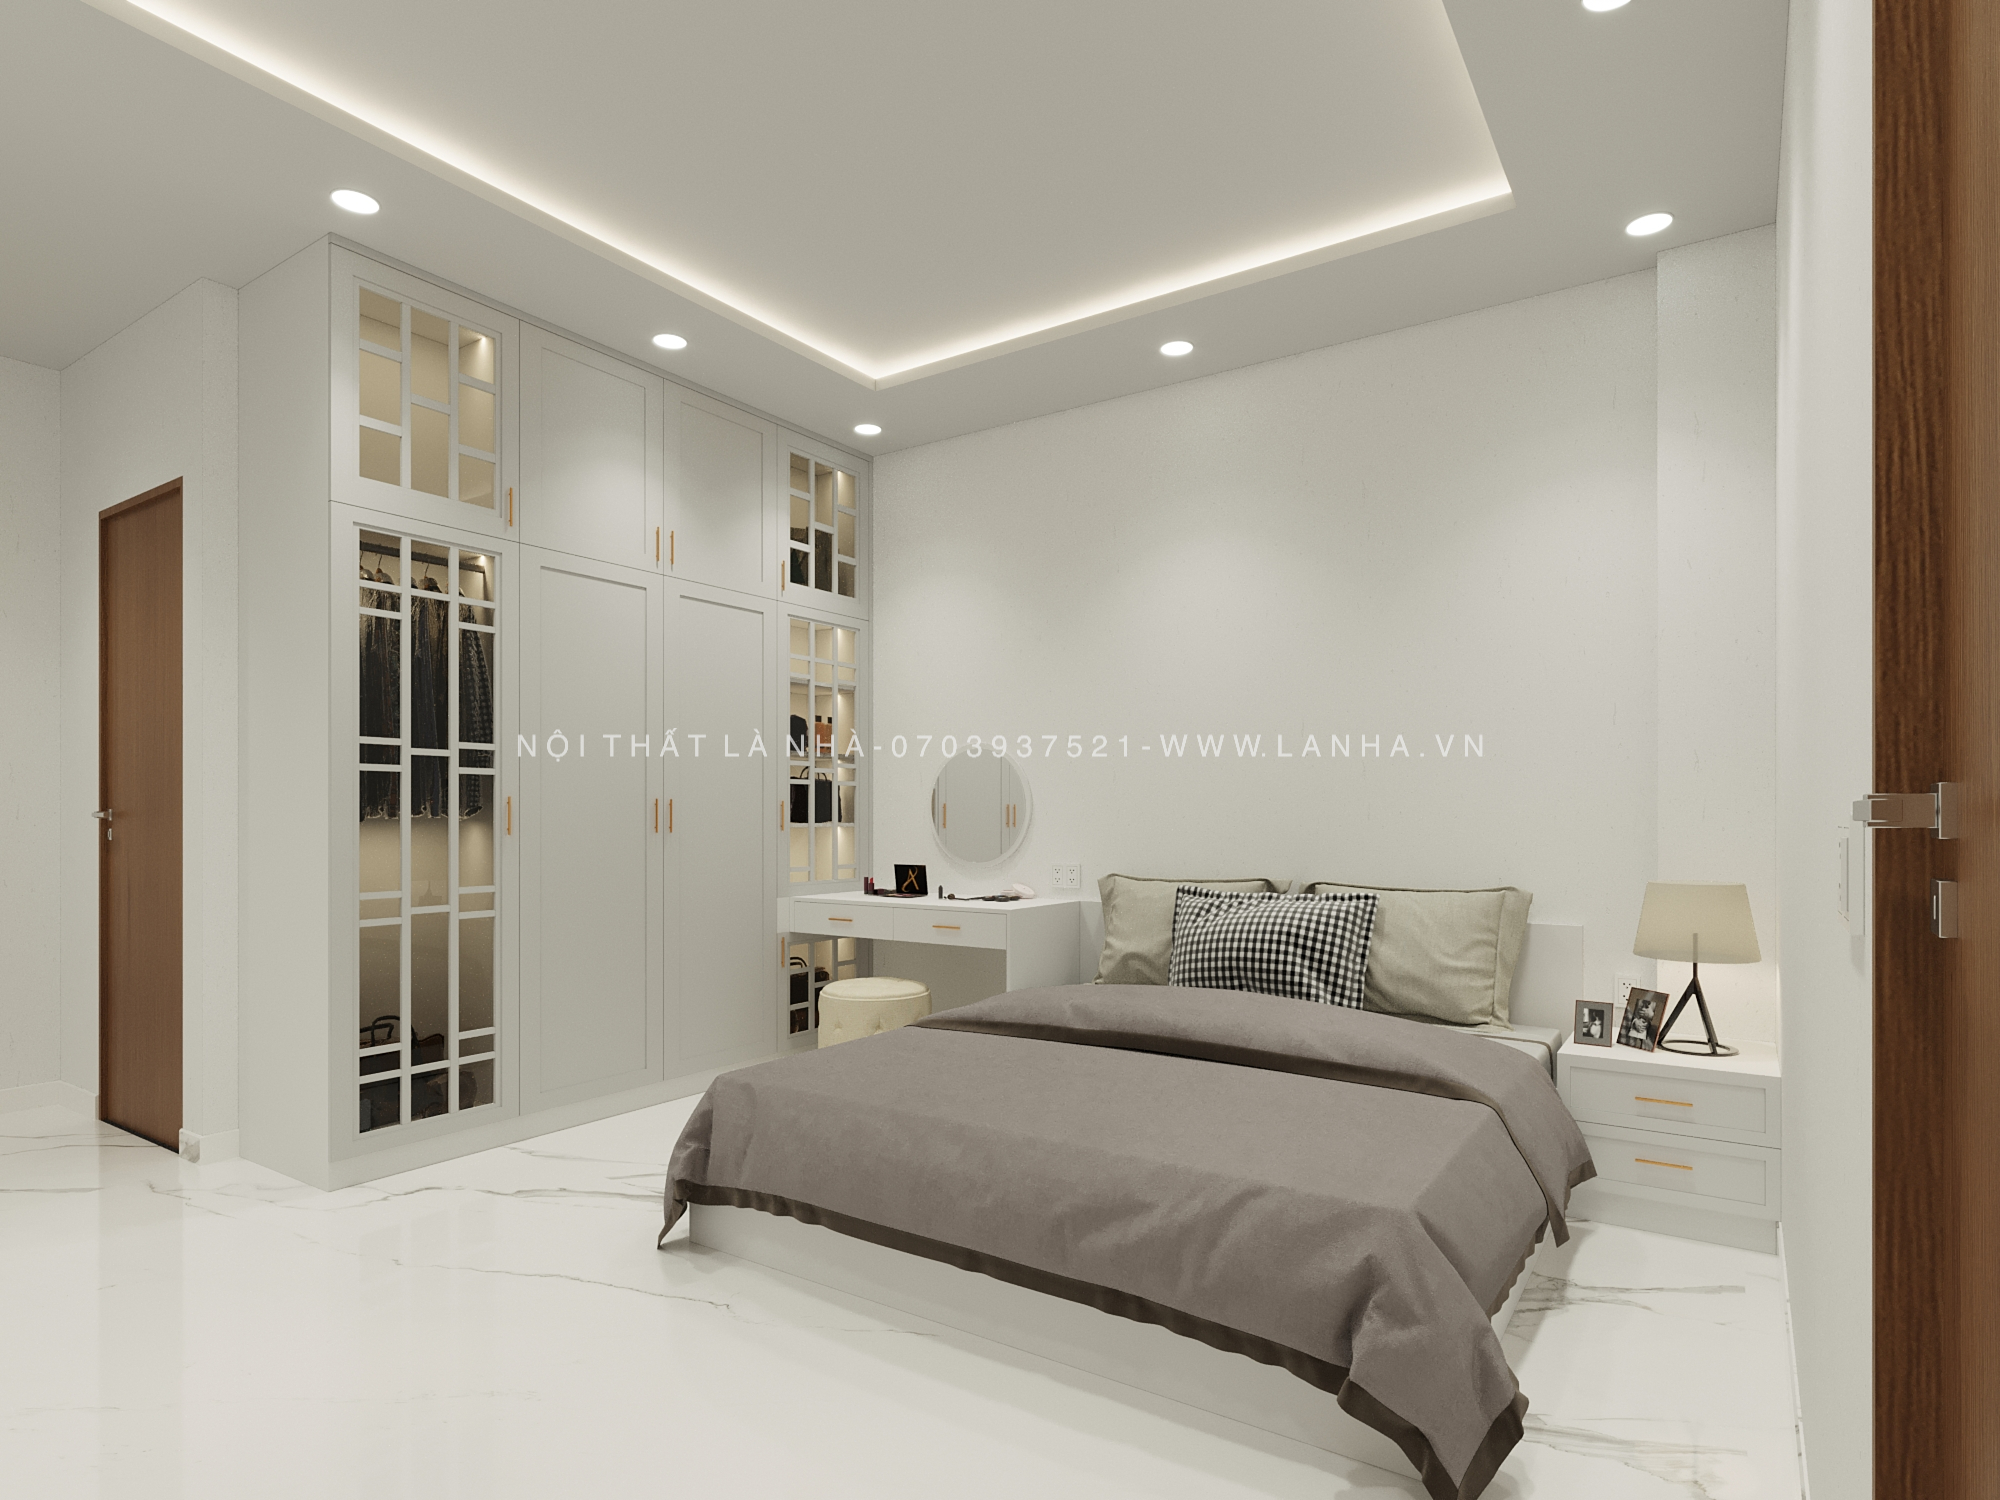 Thiết kế phòng ngủ tone trắng đồng nhất, đơn giản, tinh tế